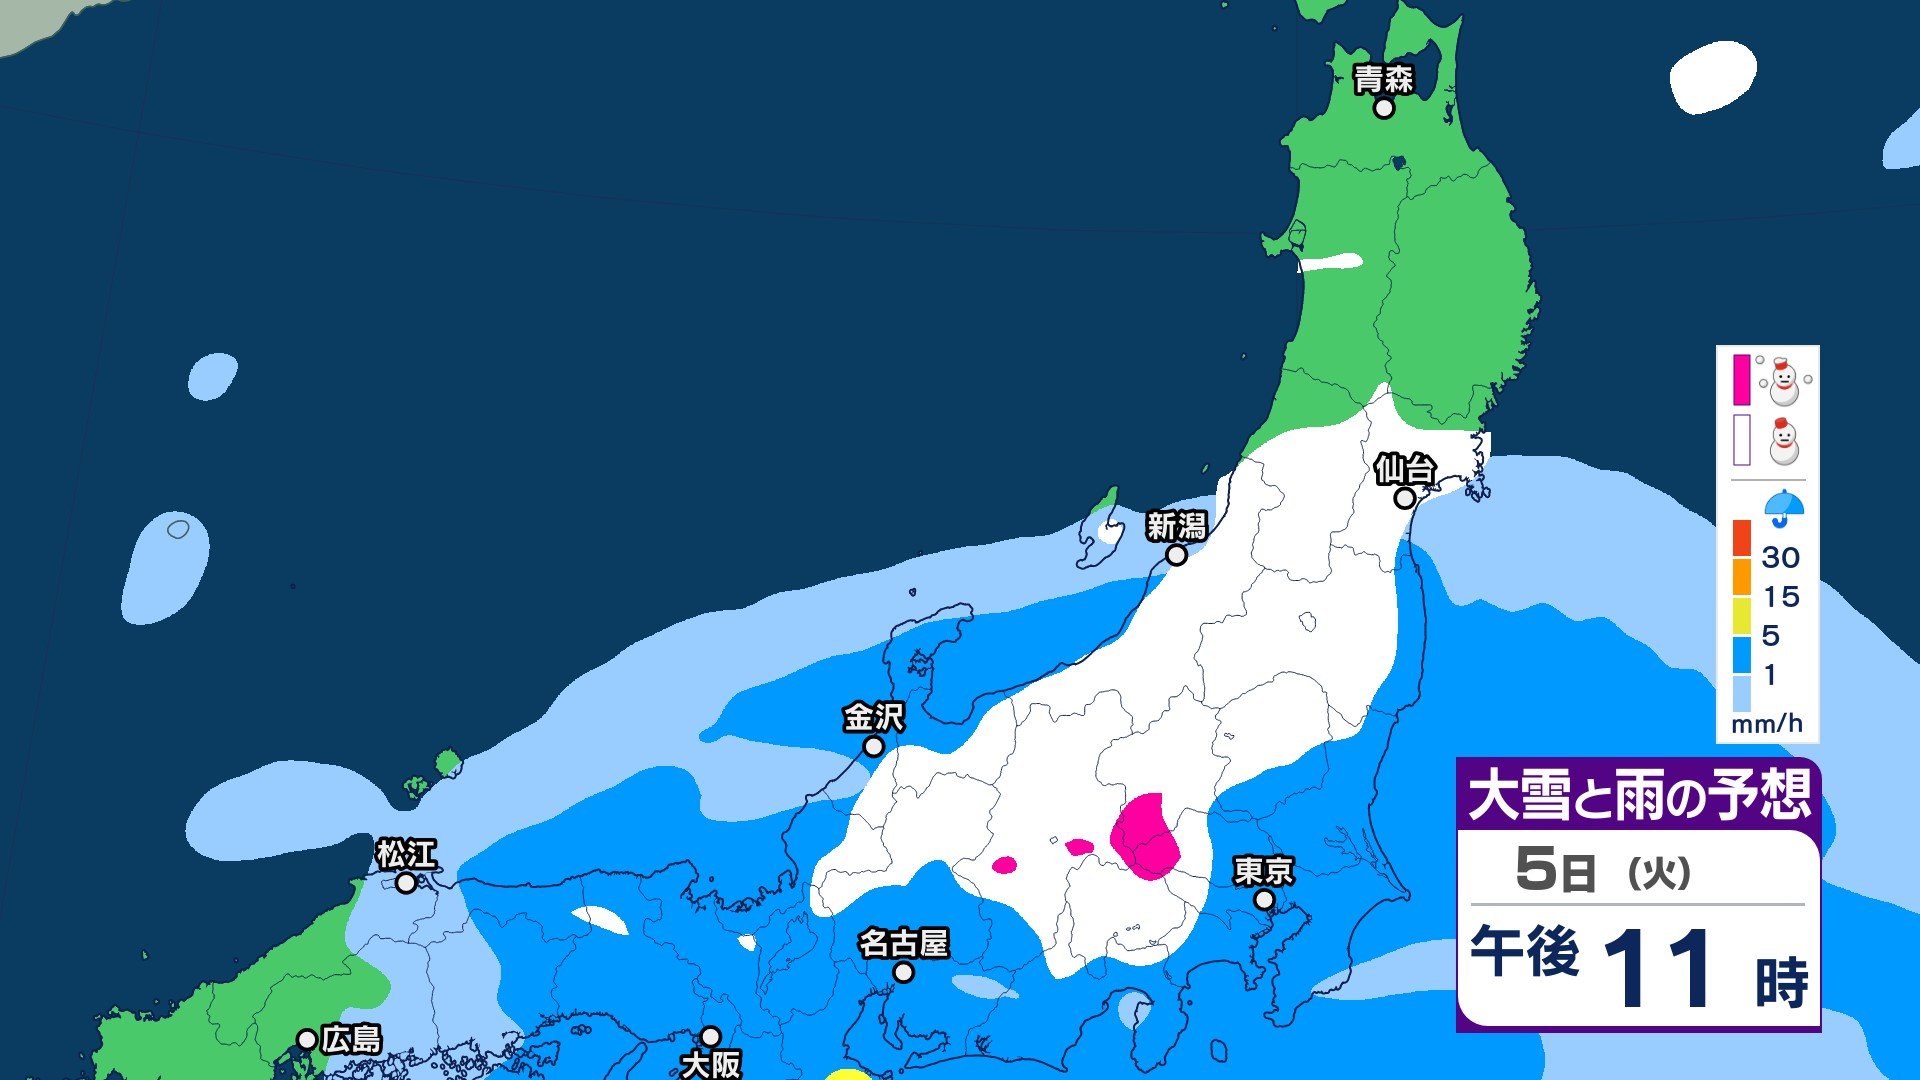 サムネイル_“南岸低気圧”の影響で6日にかけて関東甲信地方は山沿いで大雪に 北陸地方は雨による土砂災害に注意・警戒を